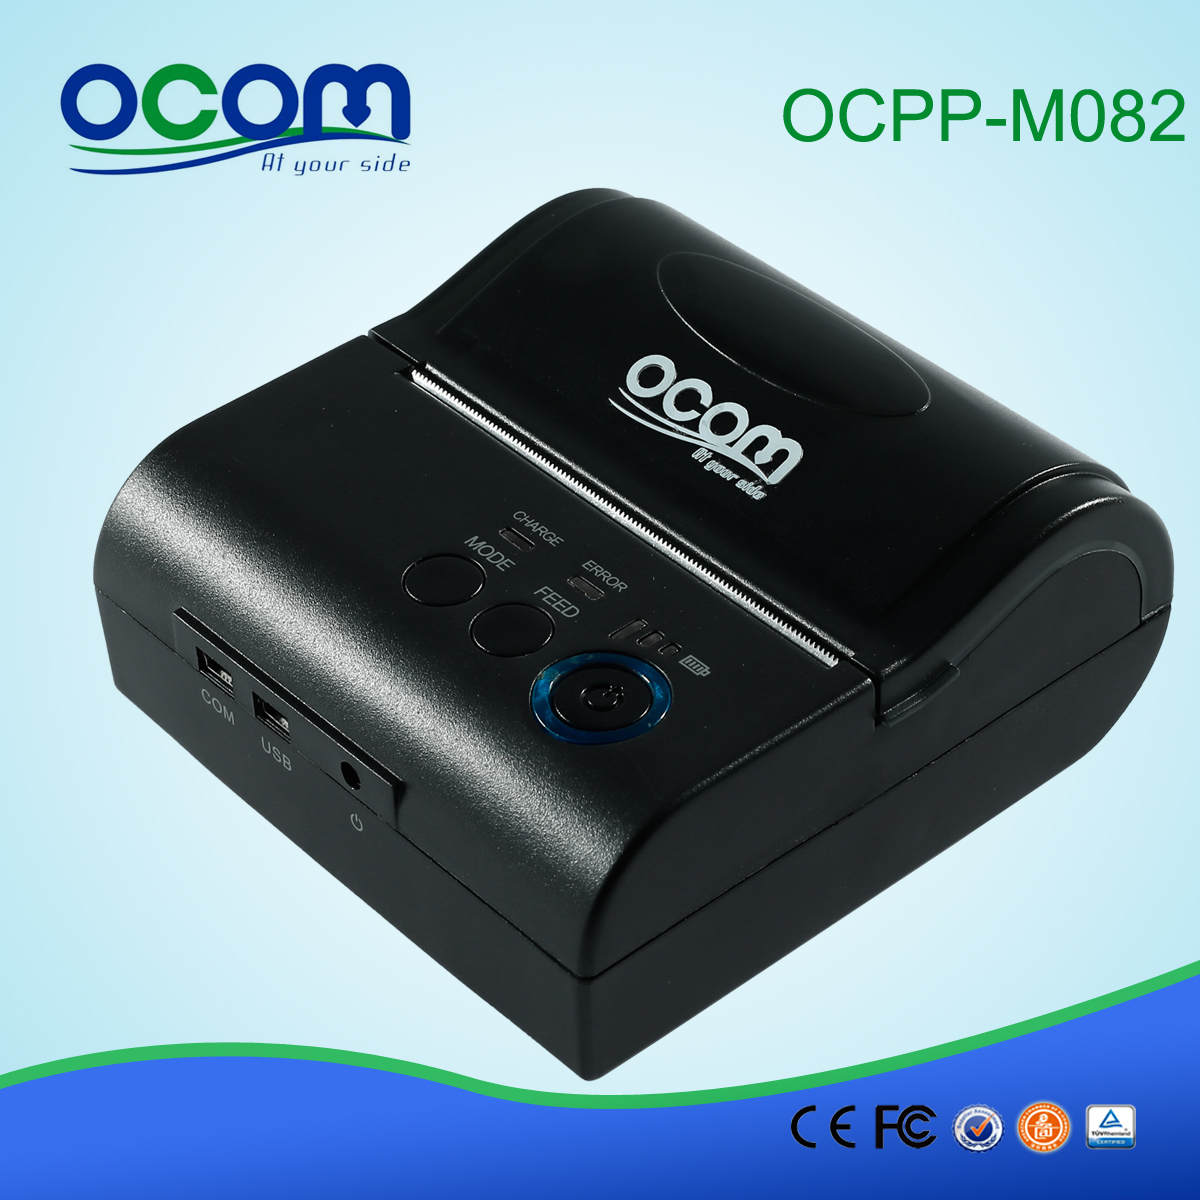 Android或IOS系统80毫米迷你便携式蓝牙收据打印机(OCPP-M082)